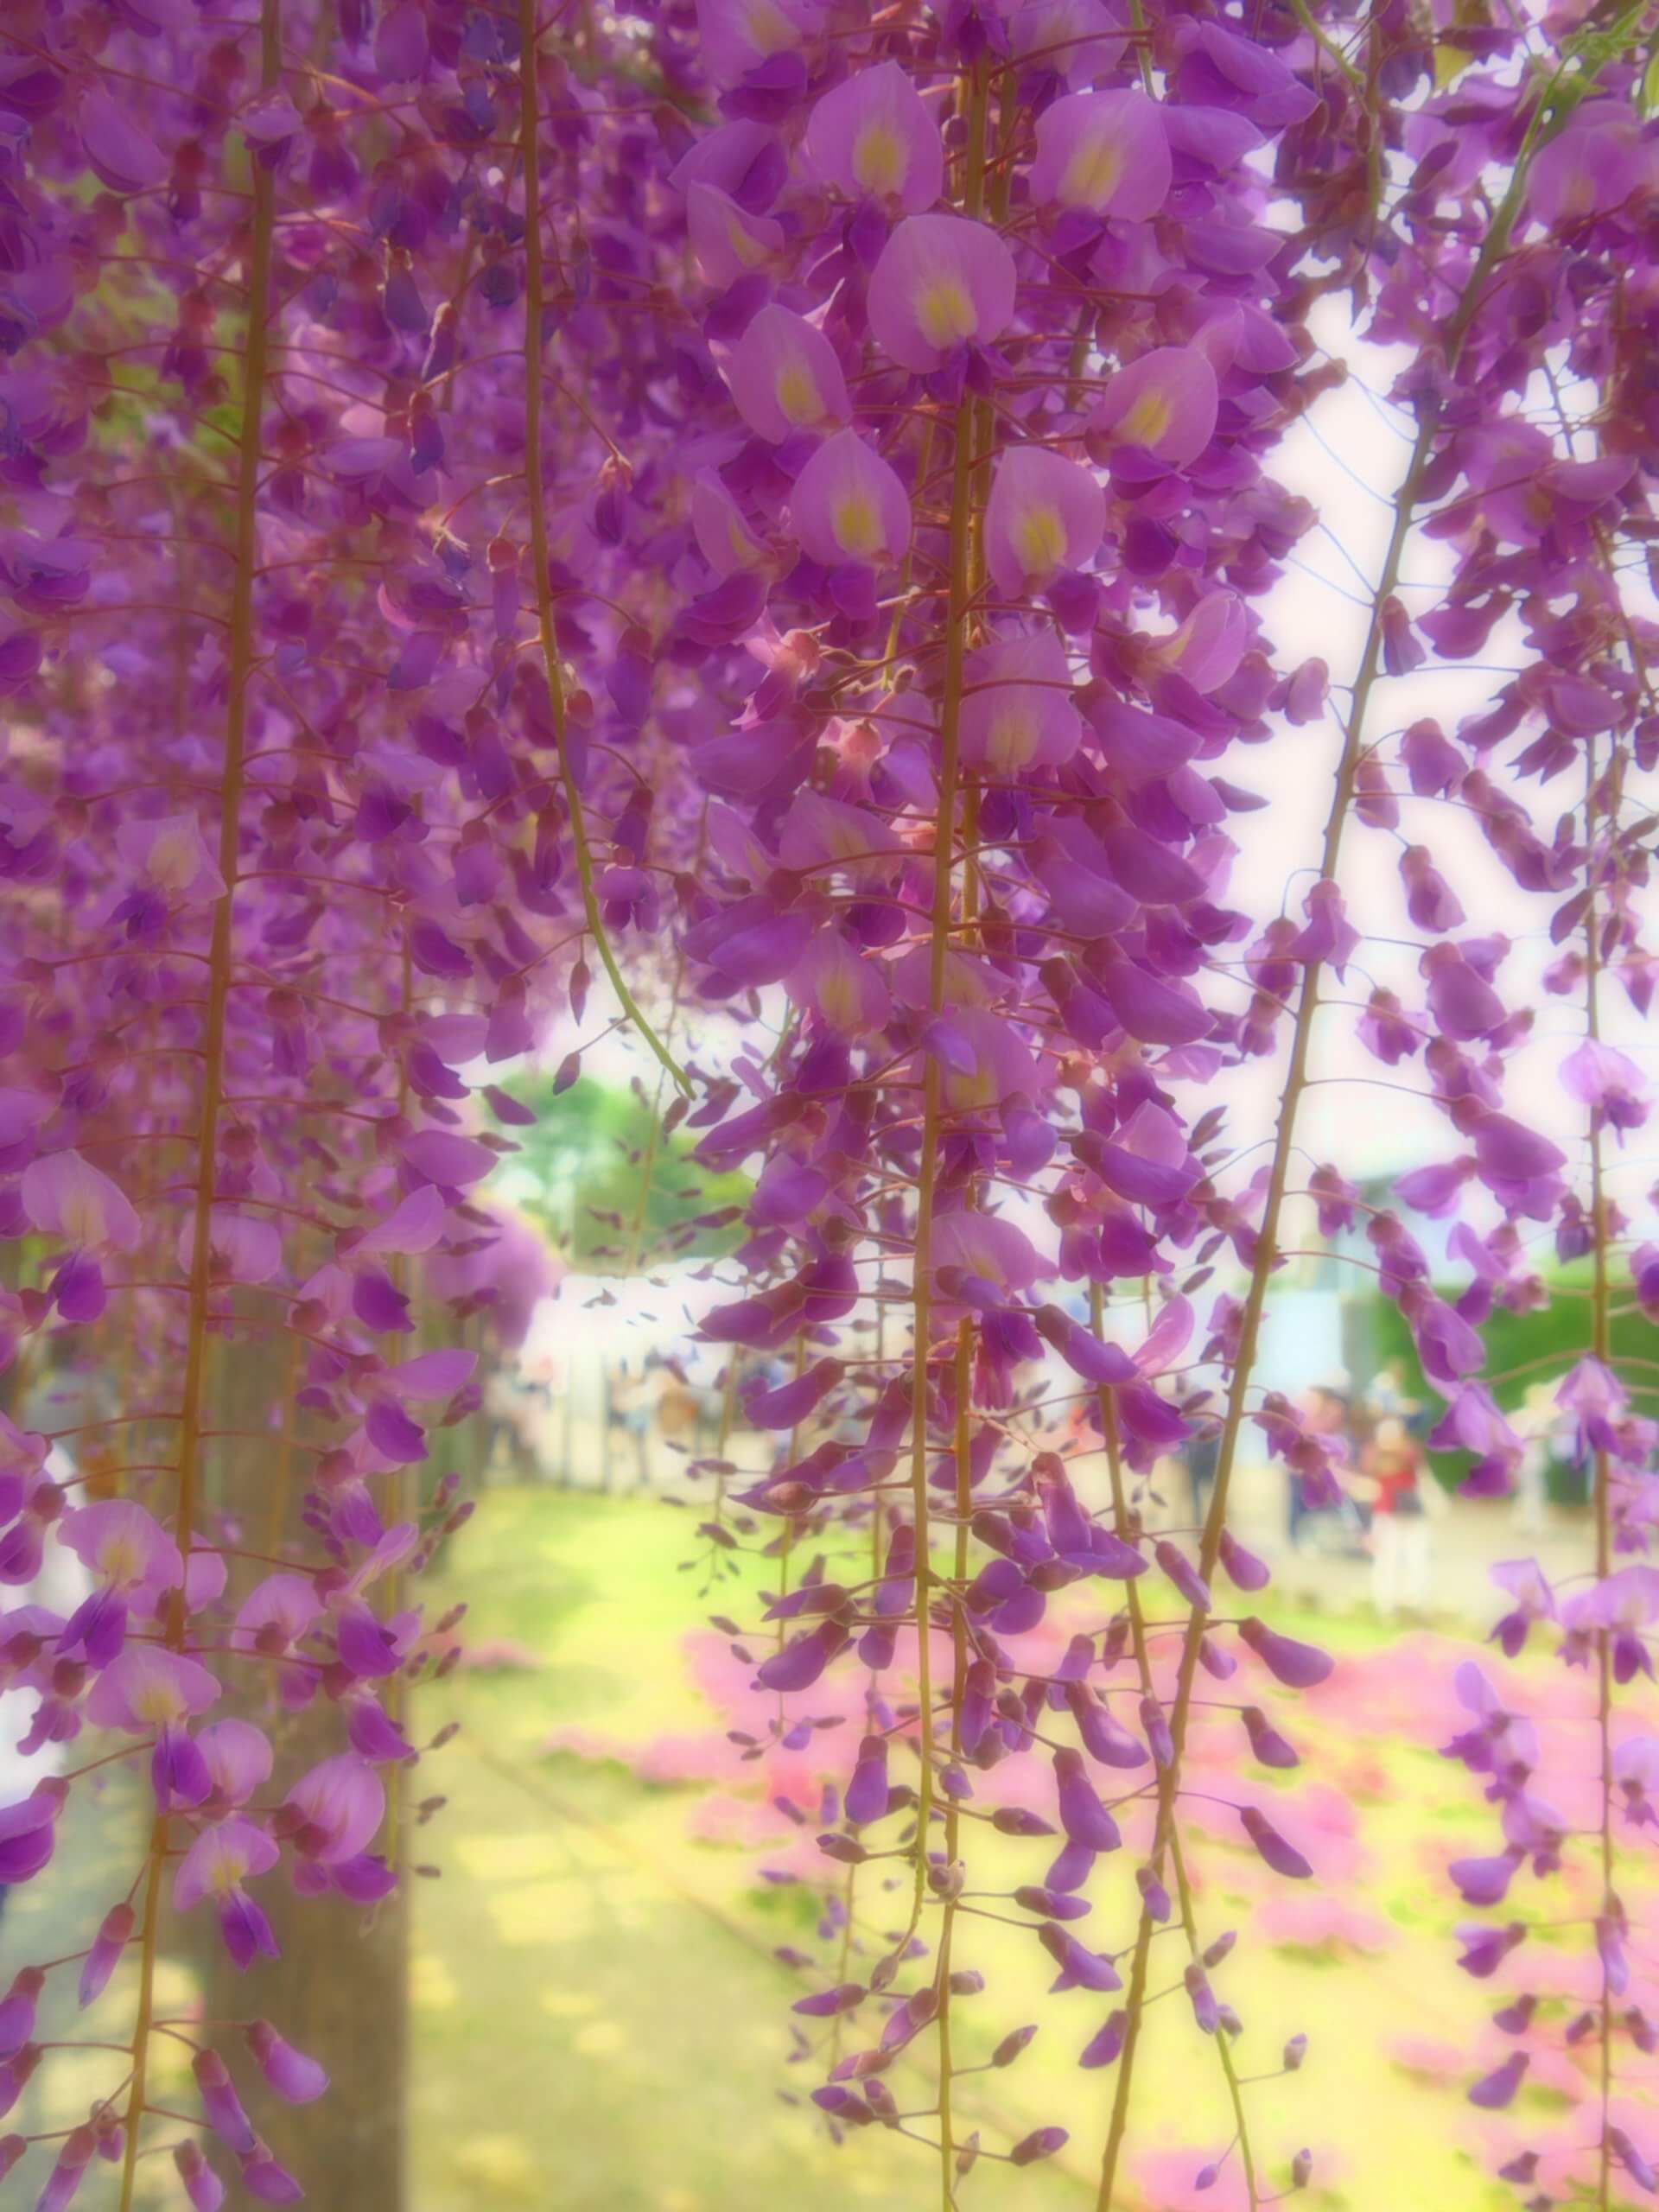 京都上下水道局鳥羽水環境保全センターの藤の花、京都上下水道局鳥羽水環境保全センターの藤棚の通り抜け